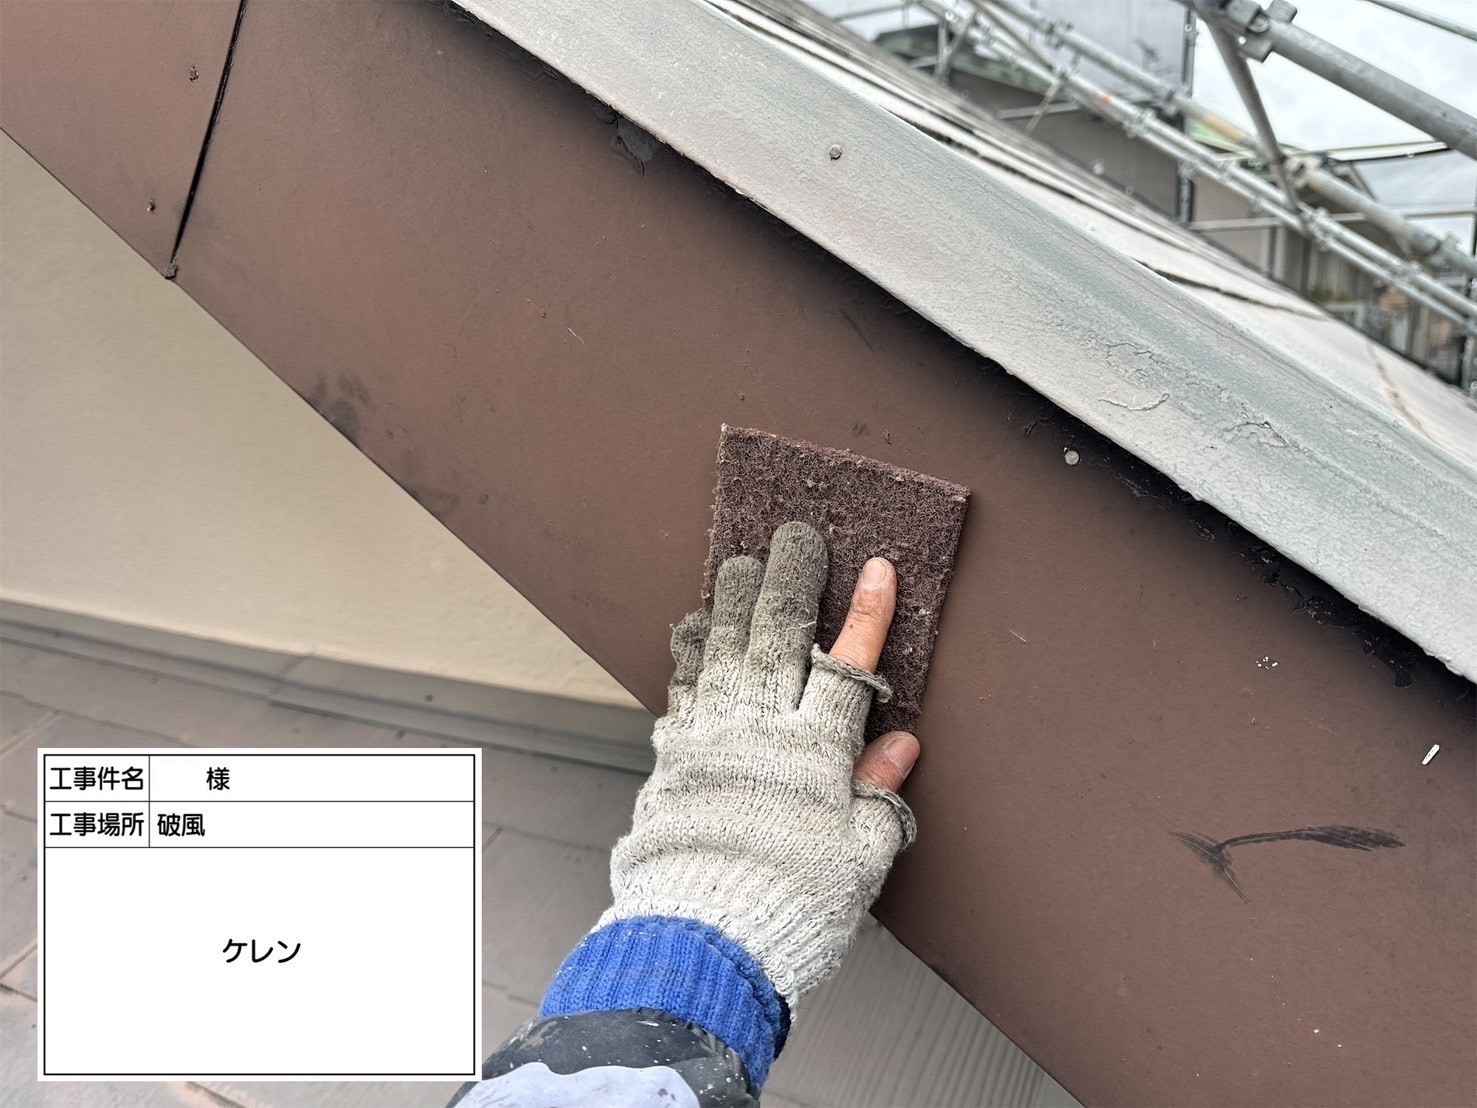 福岡県福岡市東区香椎のT様邸で外壁の補修跡が目立たないように再度補修を行い、新たに発生しているひび割れの補修も行いつつ剥がれが見られる軒天や破風板まで塗装させていただきます。屋根にも汚れやさびが付着していましたので合わせてきれいに塗装しました。4/11完成です。【HPより】